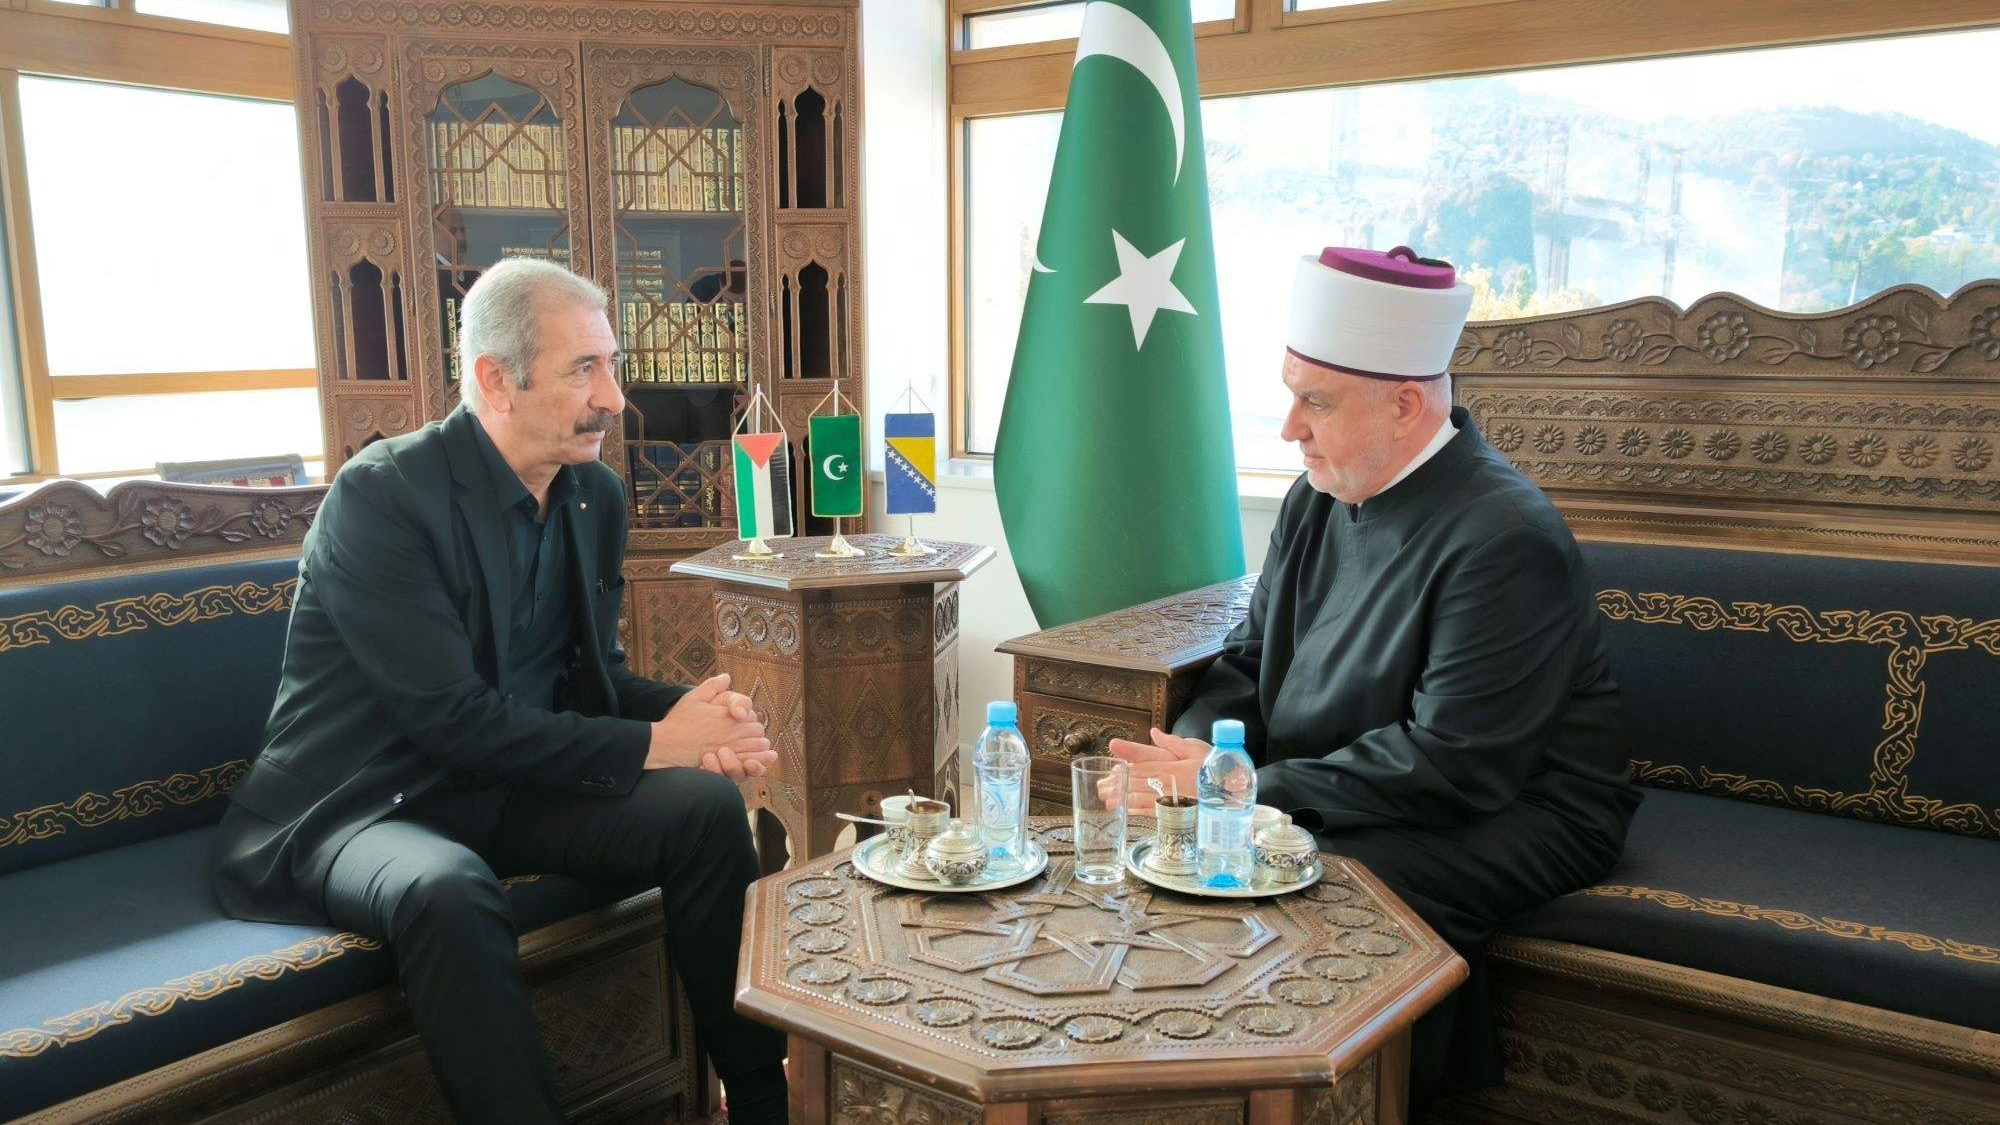 Reisul-ulema sa palestinskim ambasadorom razgovarao o situaciji u Palestini